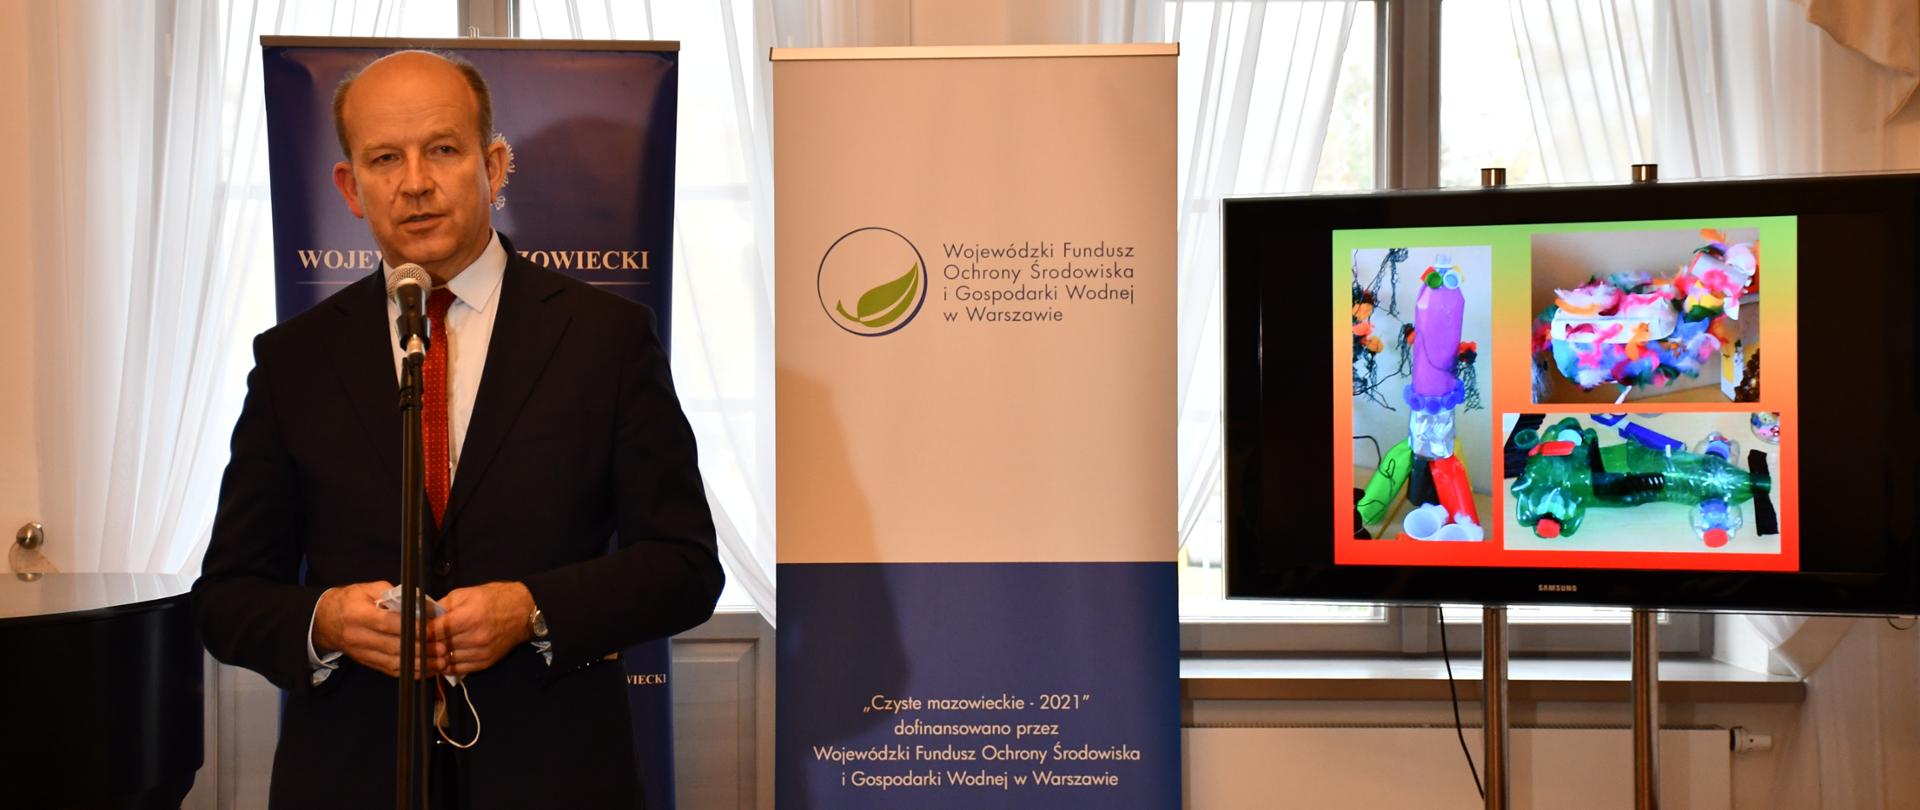 Wojewoda Mazowiecki Konstanty Radziwiłł przemawia podczas edukacyjnych warsztatów ekologicznych w ramach kampanii "Czyste mazowieckie 2021"